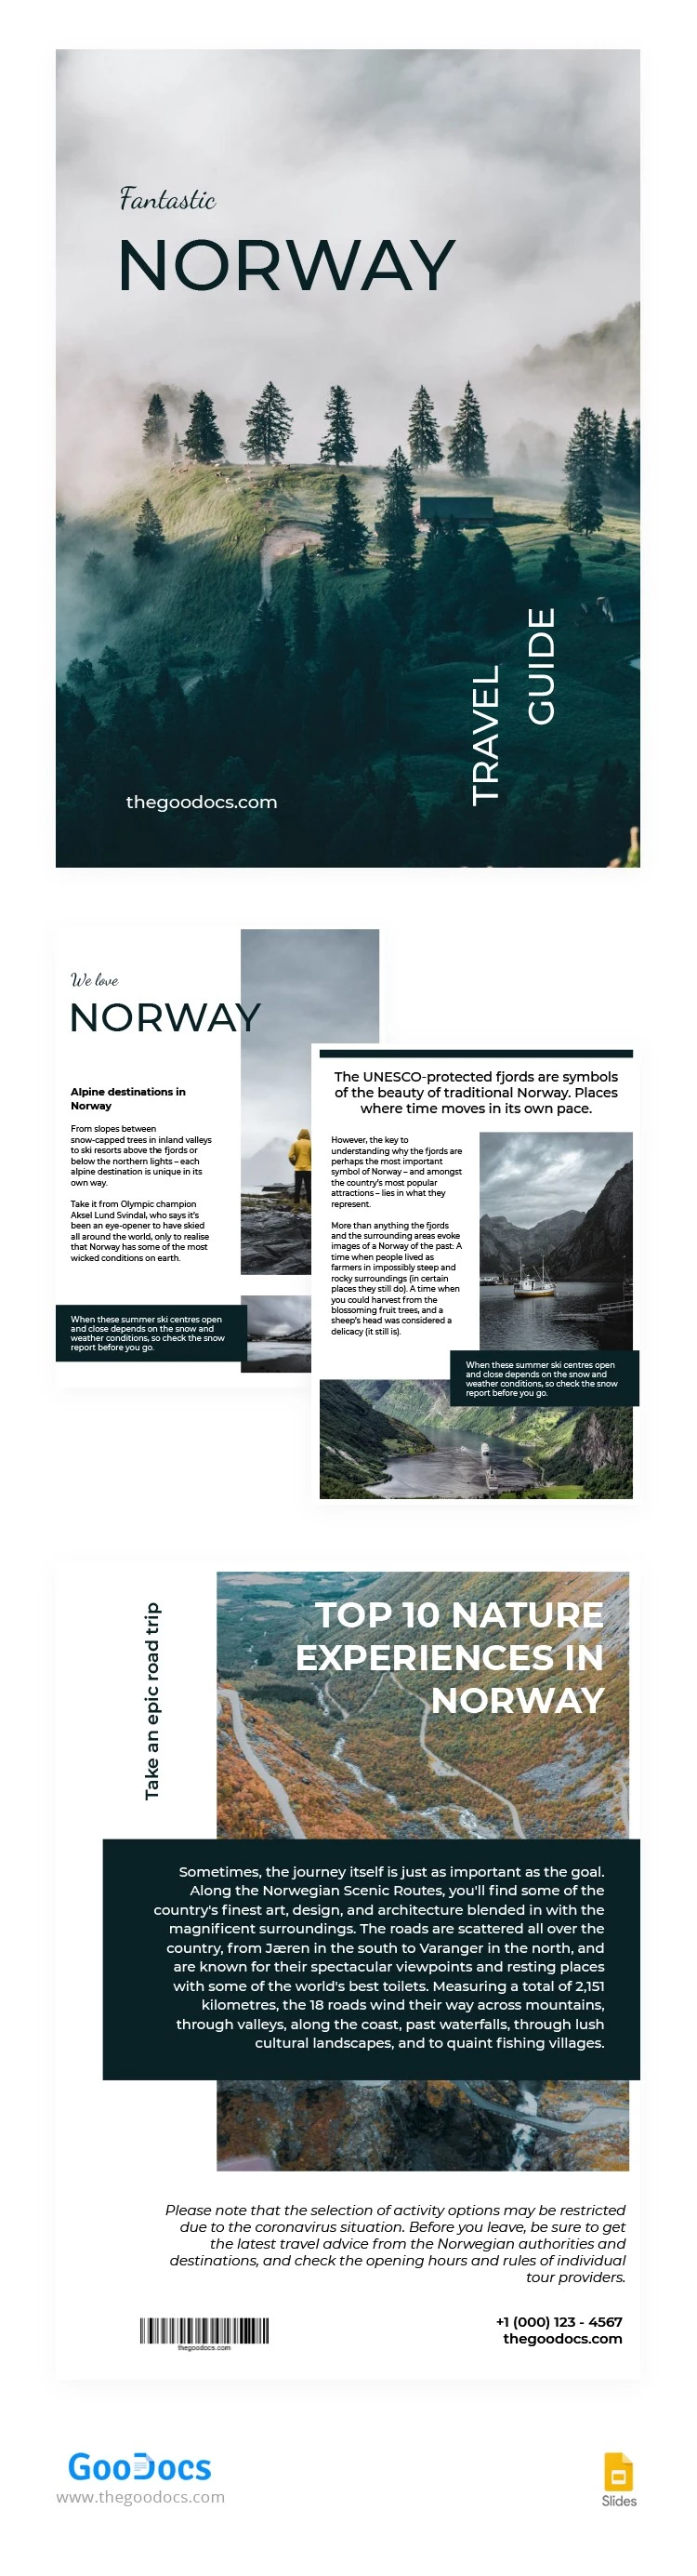 Livro fantástico da Noruega - free Google Docs Template - 10062805